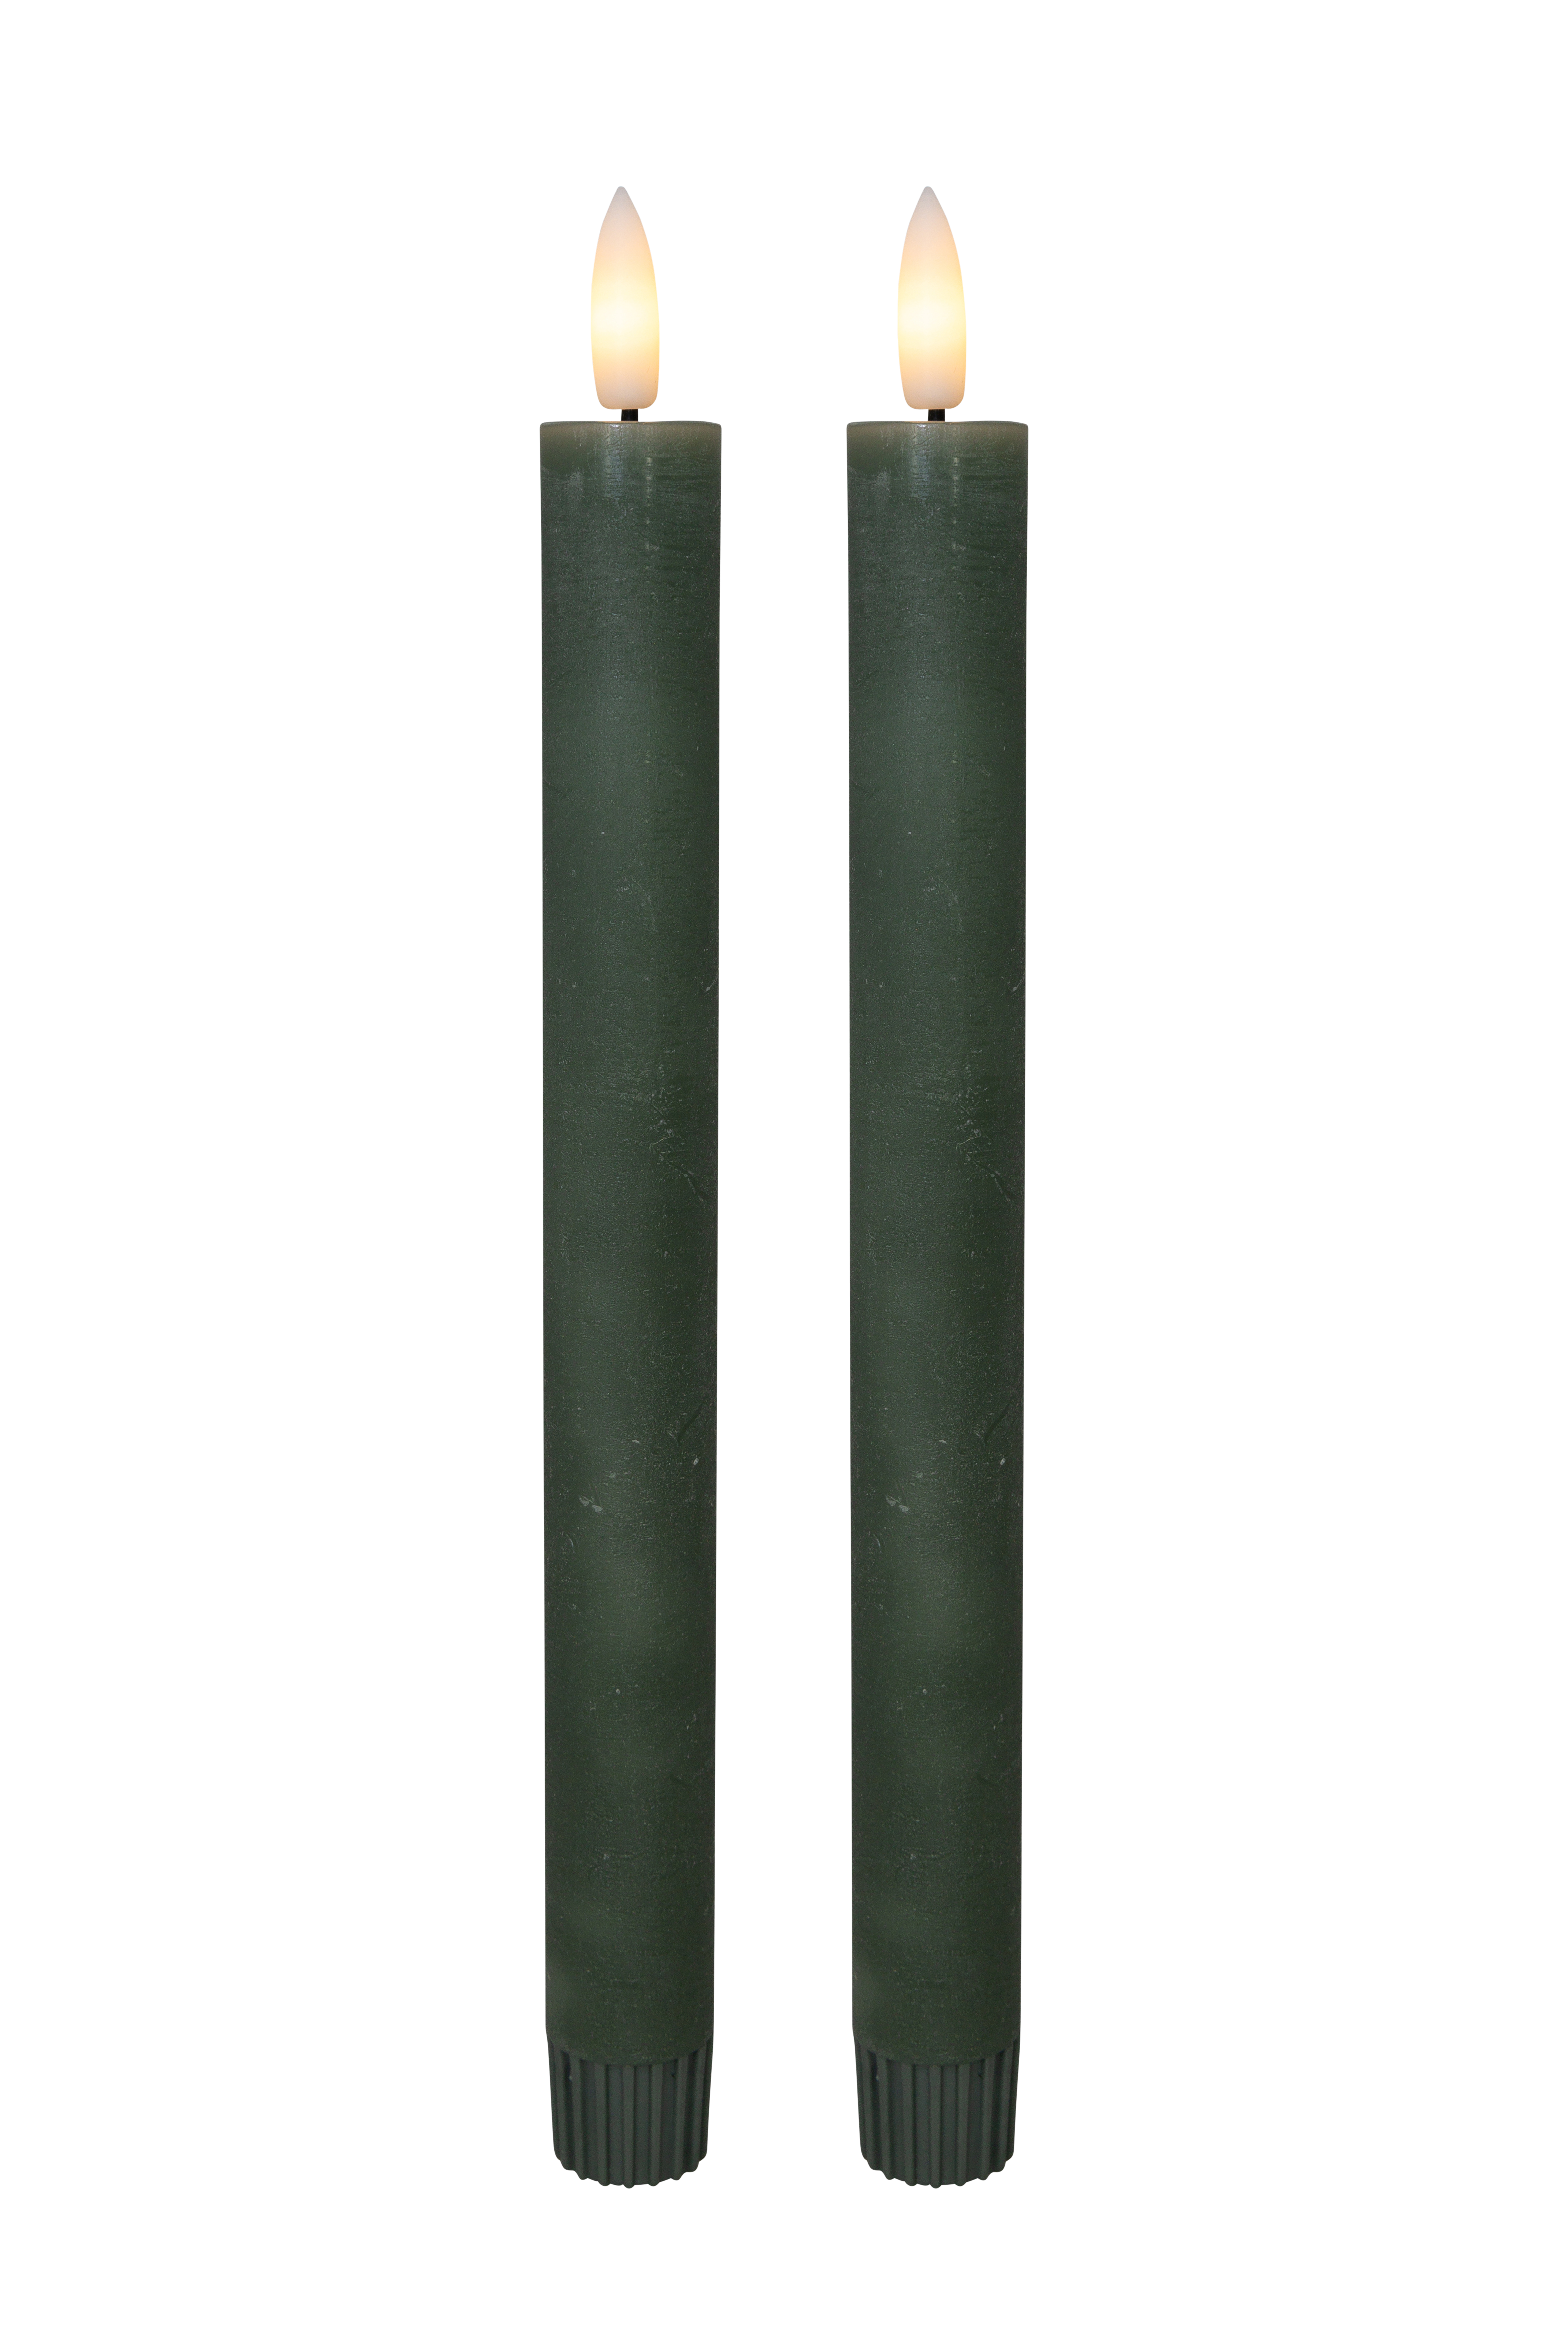 Se Cozzy kronelys, 3D flamme, 22,2 cm, grøn, 2 stk (bruges med fjernbetjening) hos Pixojet